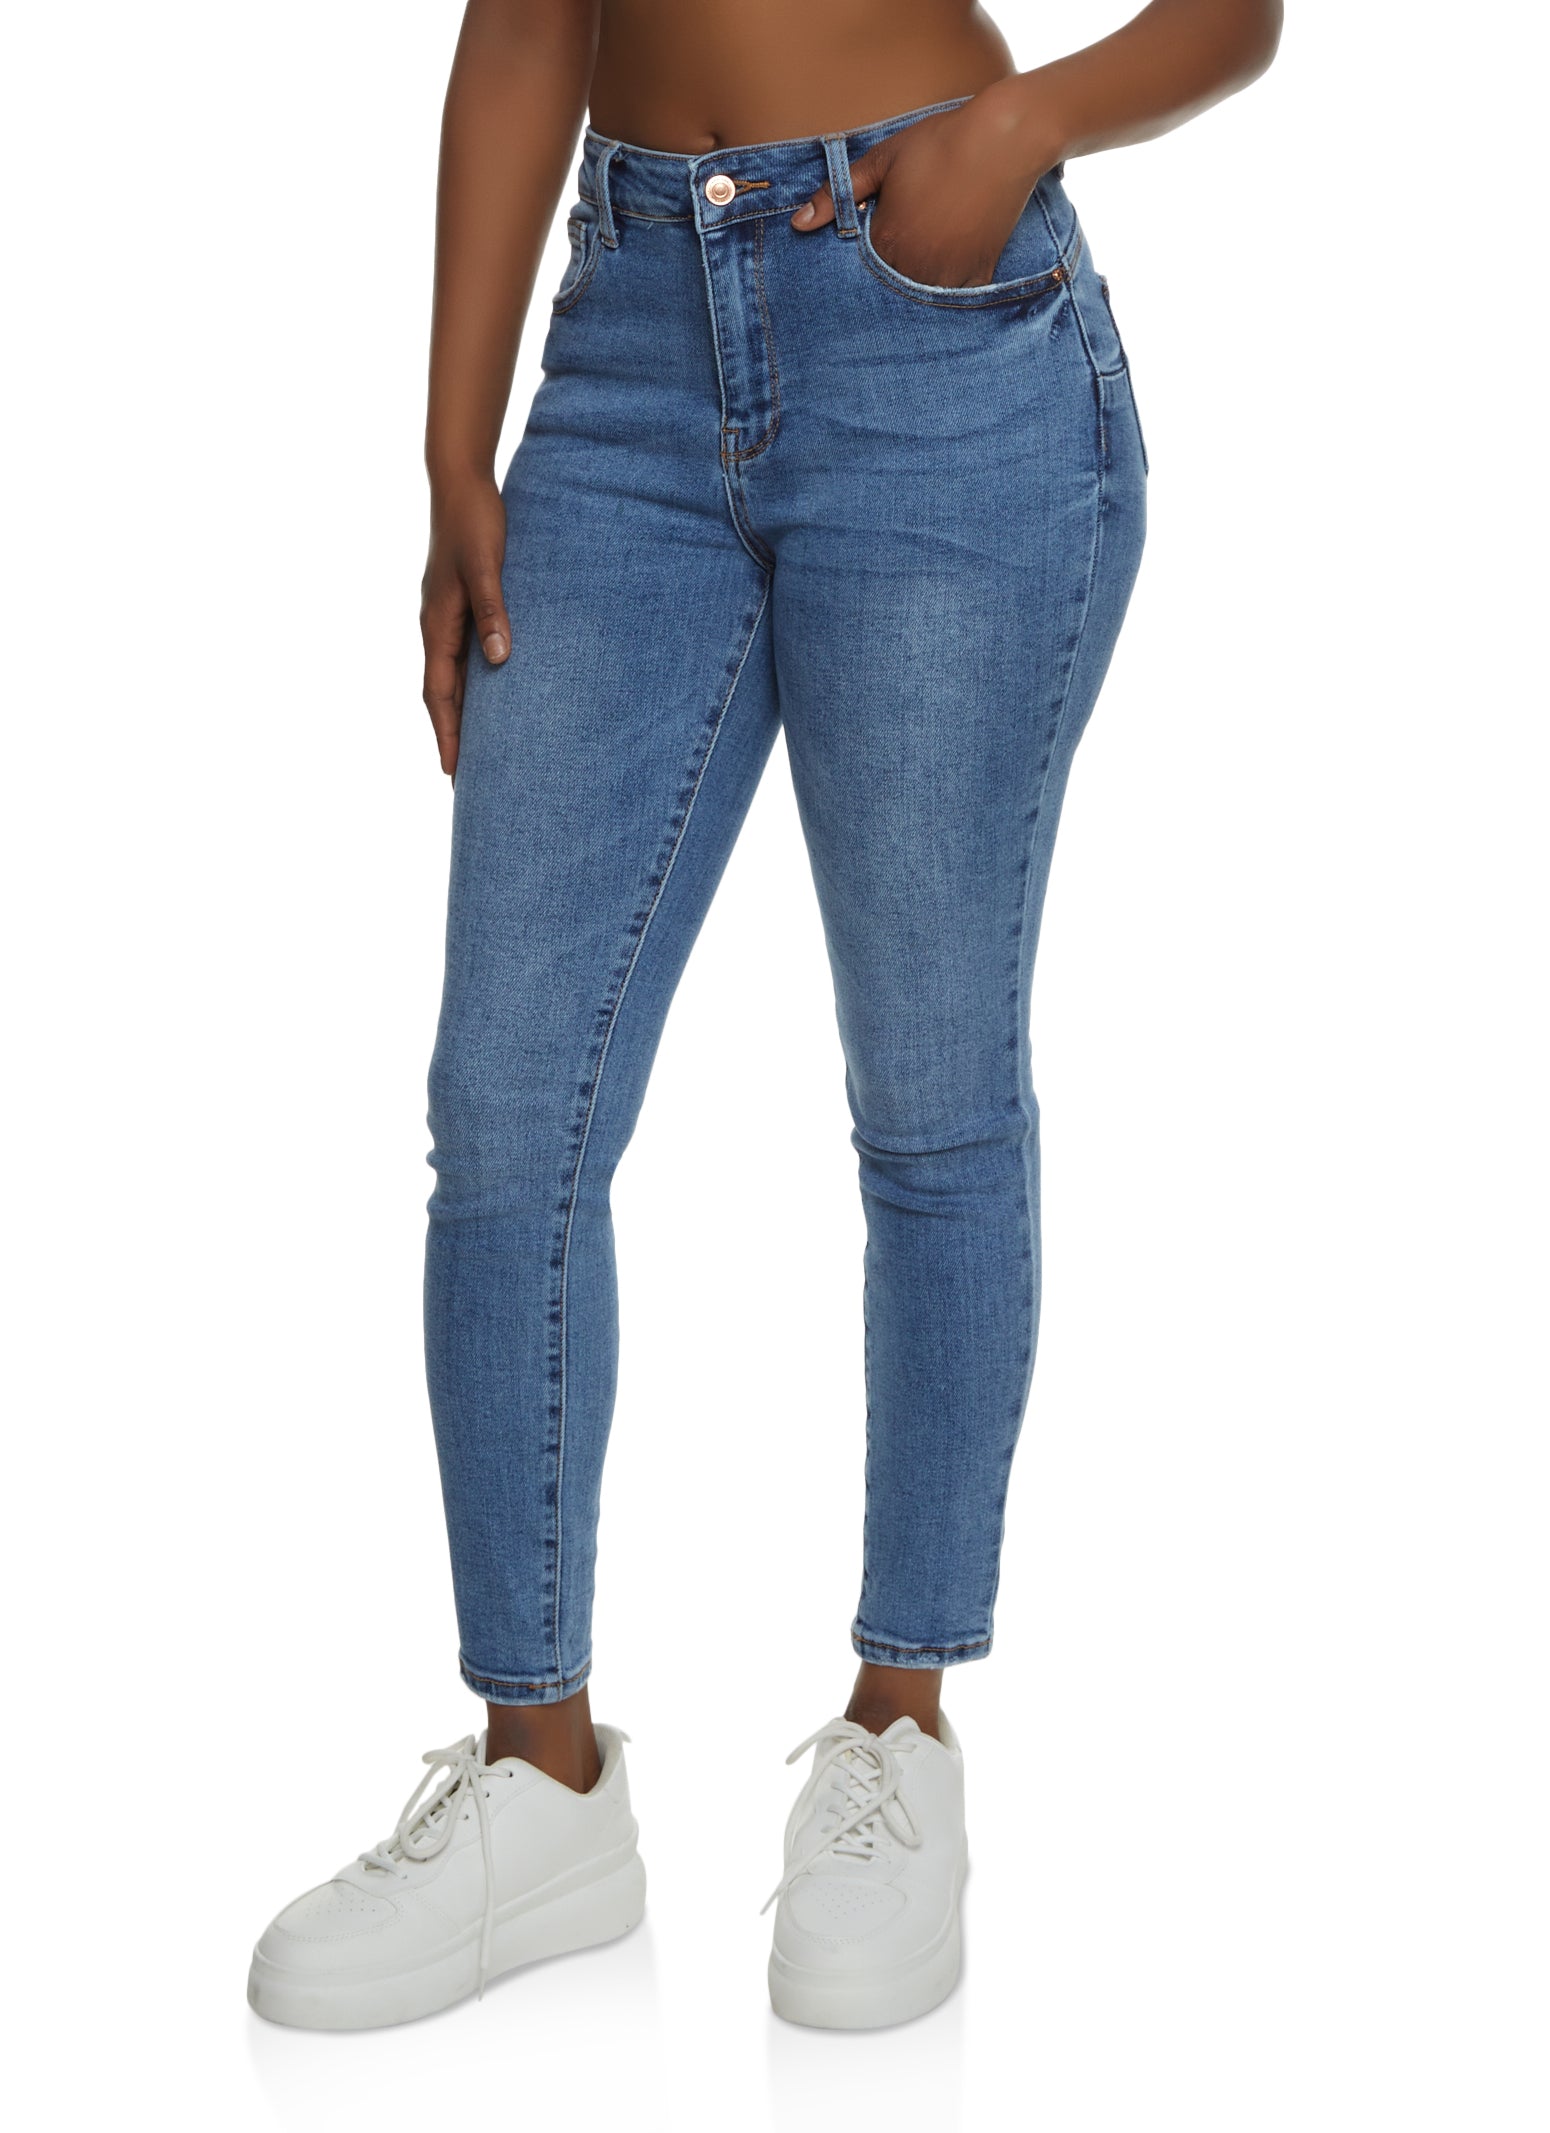 Waxed slim crop jeans - Women